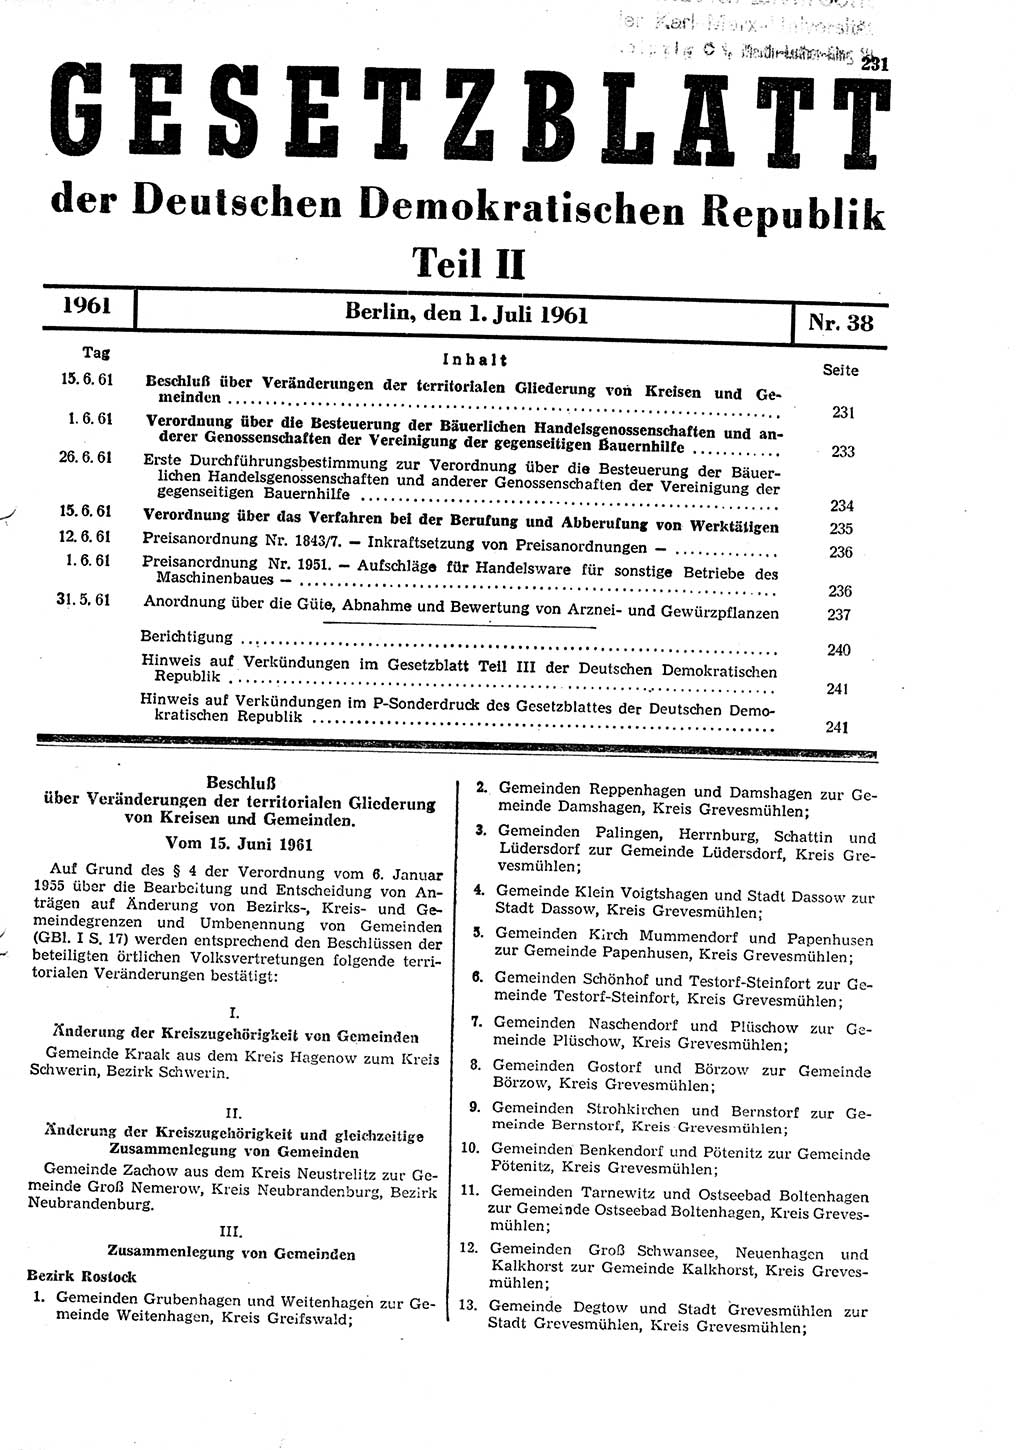 Gesetzblatt (GBl.) der Deutschen Demokratischen Republik (DDR) Teil ⅠⅠ 1961, Seite 231 (GBl. DDR ⅠⅠ 1961, S. 231)